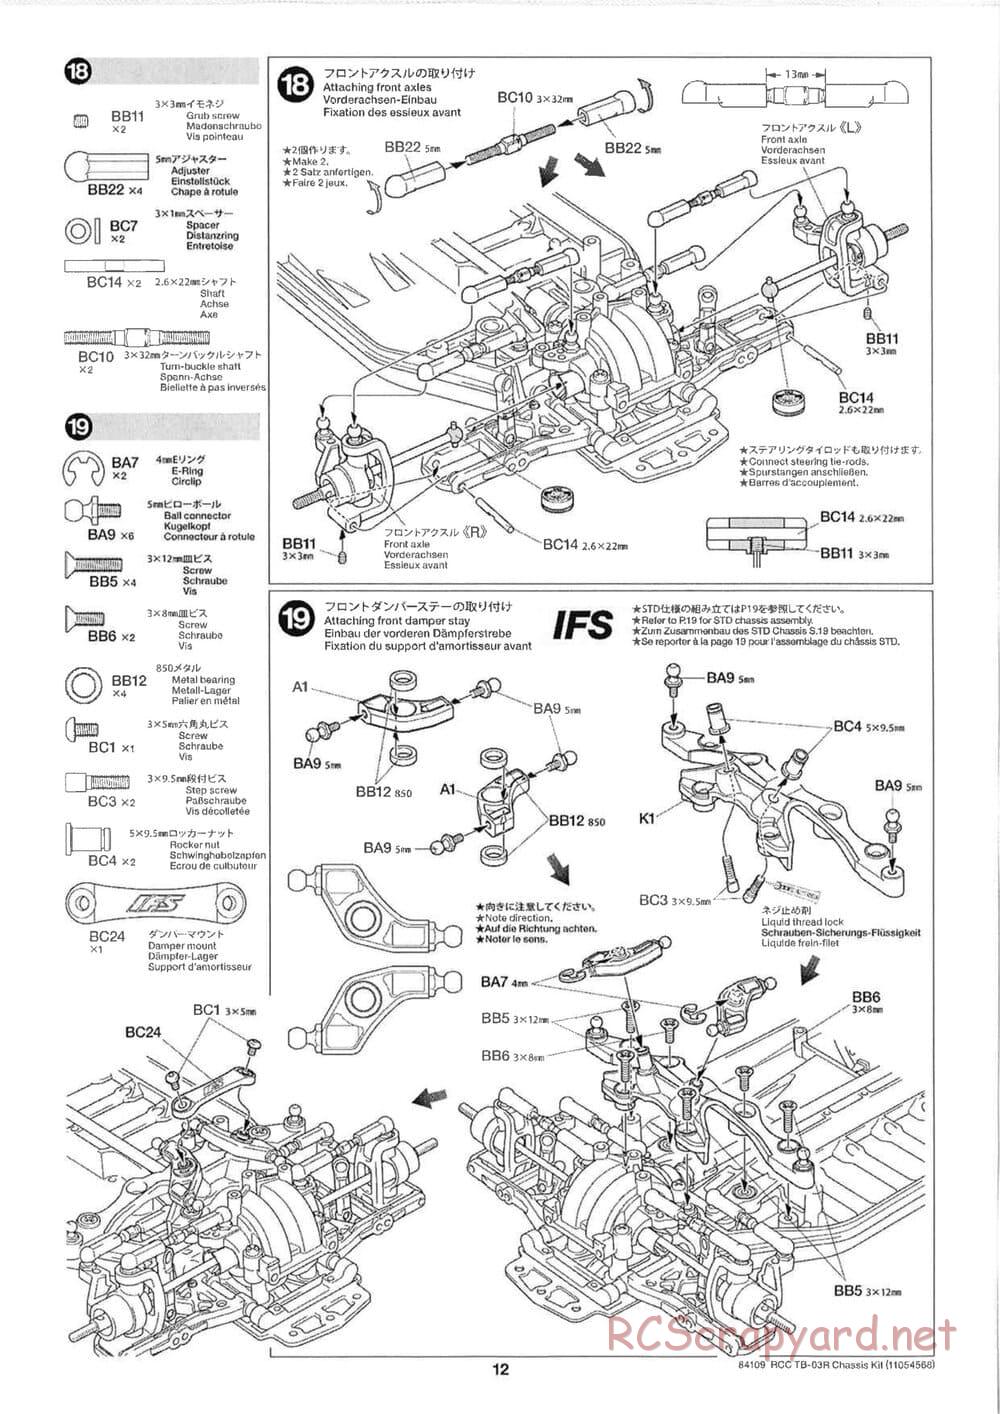 Tamiya - TB-03R Chassis - Manual - Page 12